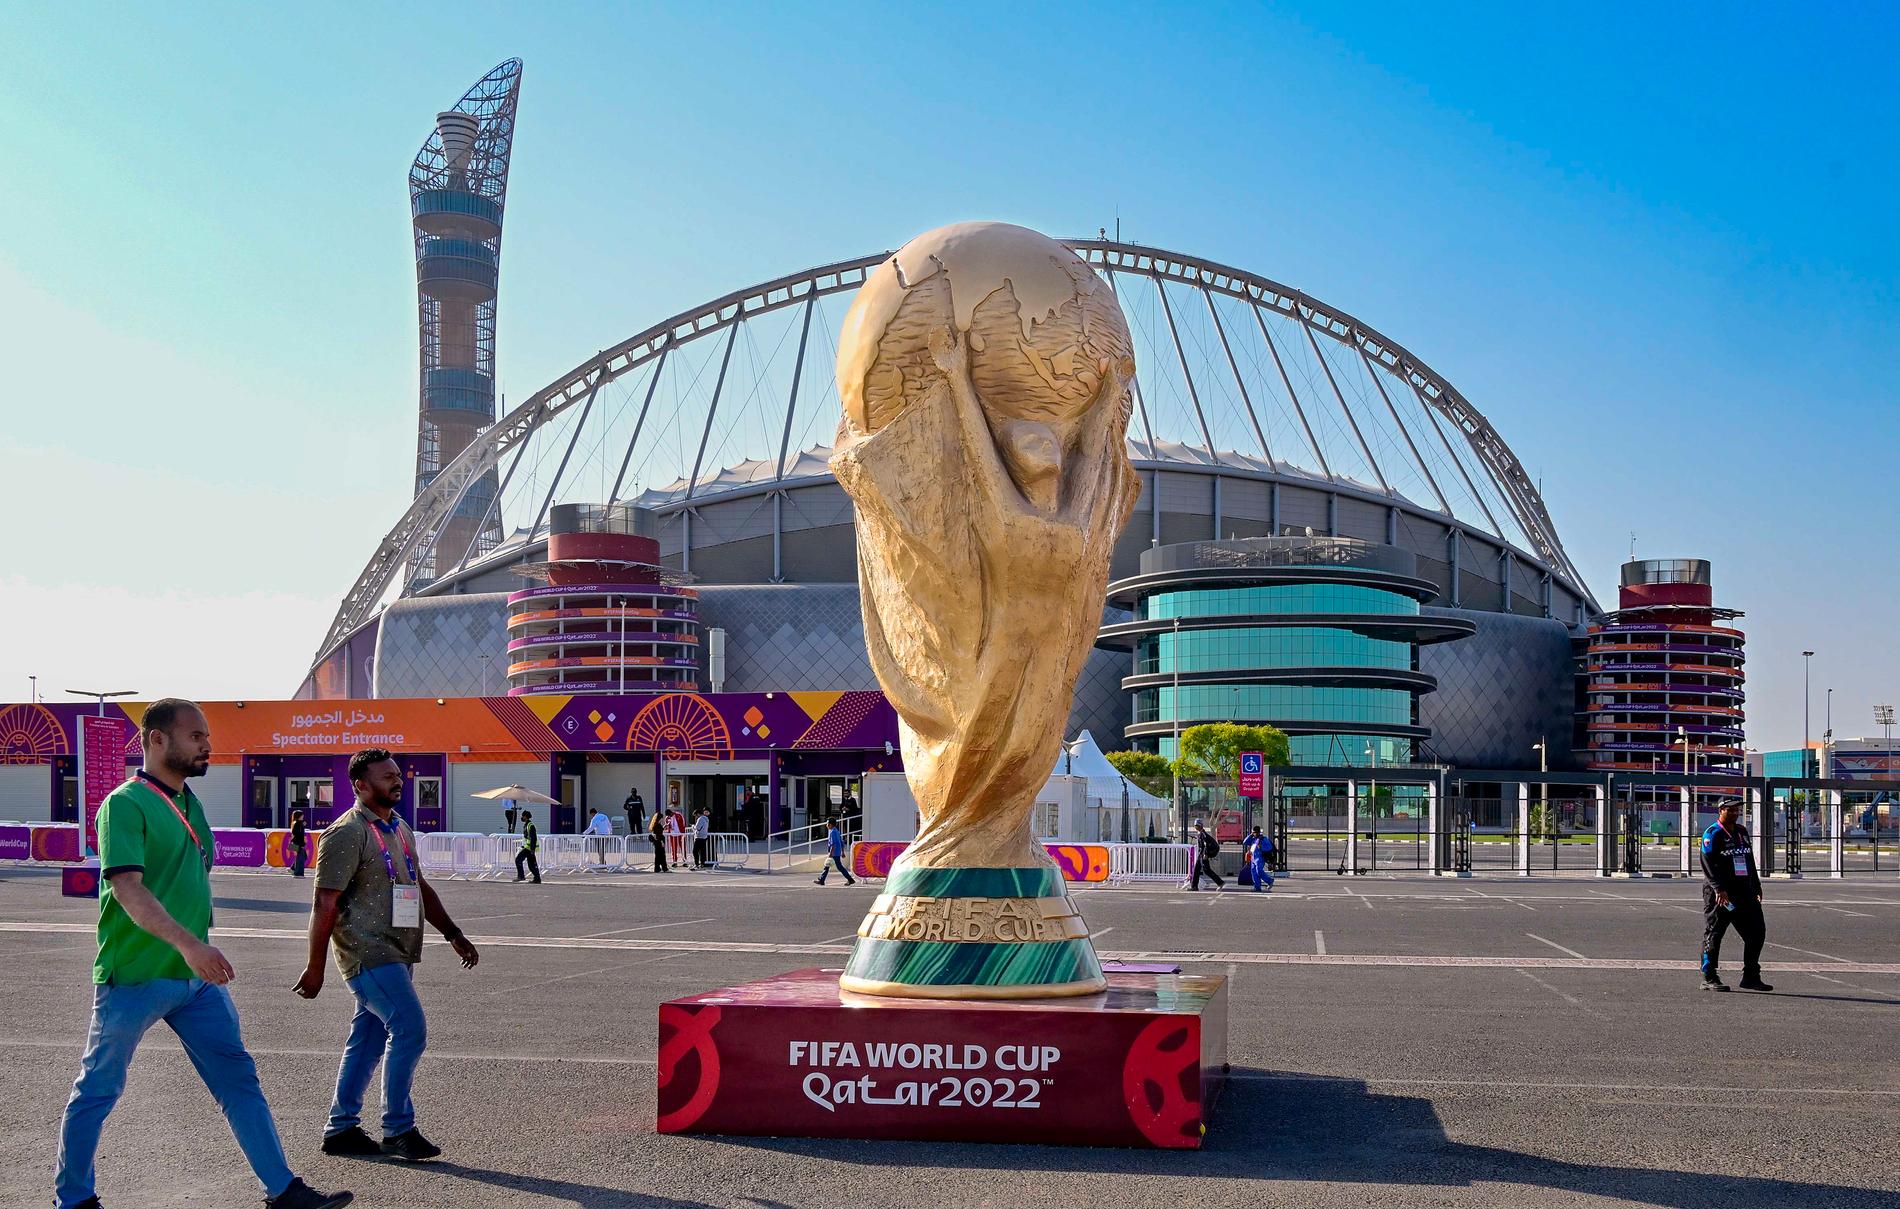 Khalifastadion är en av de nybyggda arenor där VM kommer att avgöras den närmaste månaden.